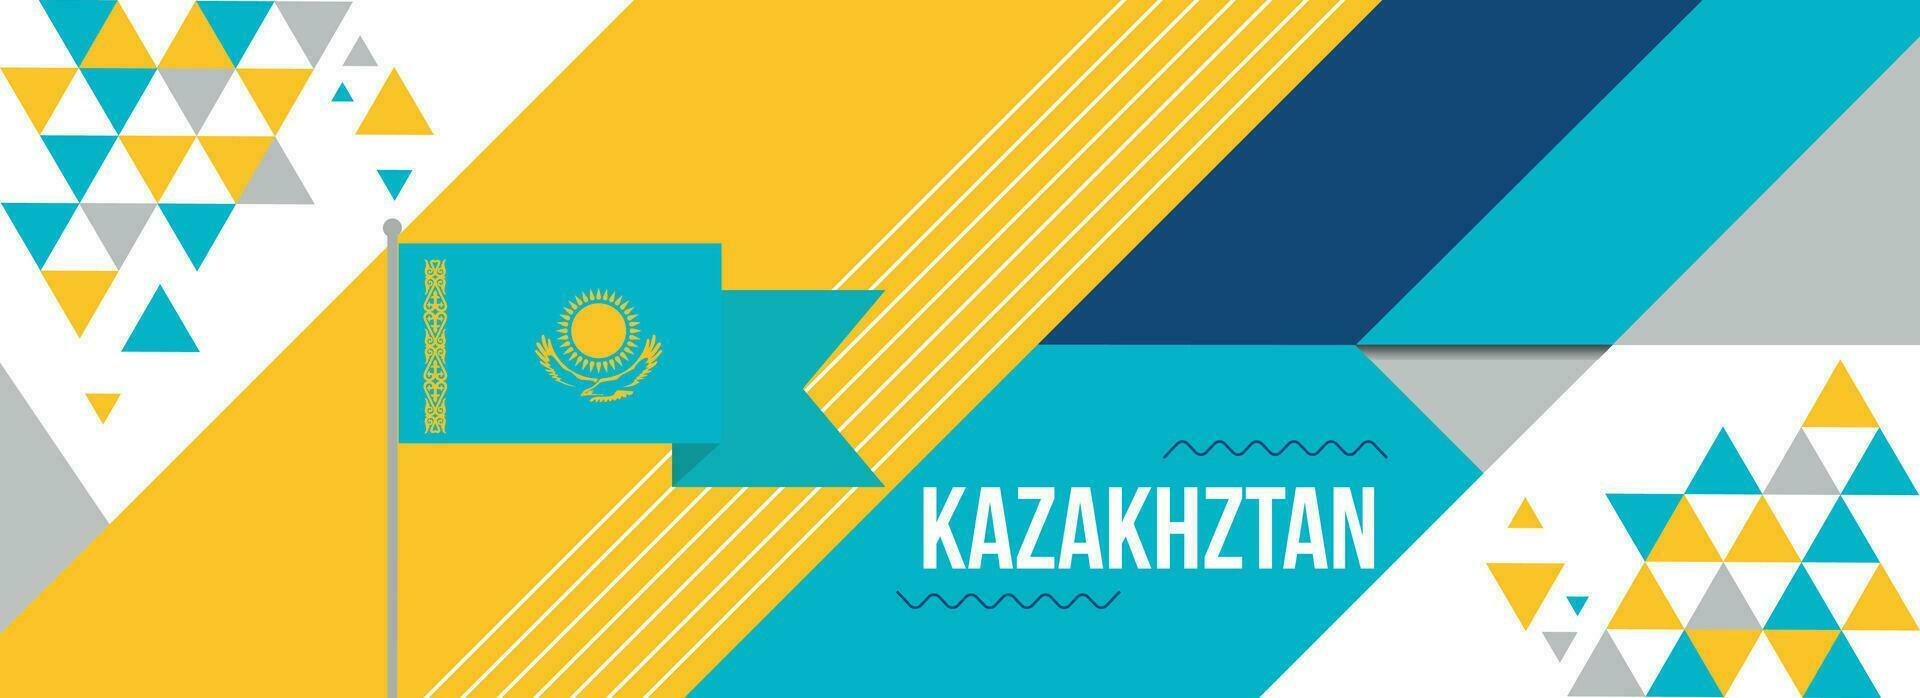 Kazajstán nacional o independencia día bandera diseño para país celebracion. bandera de Kazajstán con moderno retro diseño y resumen geométrico iconos vector ilustración.